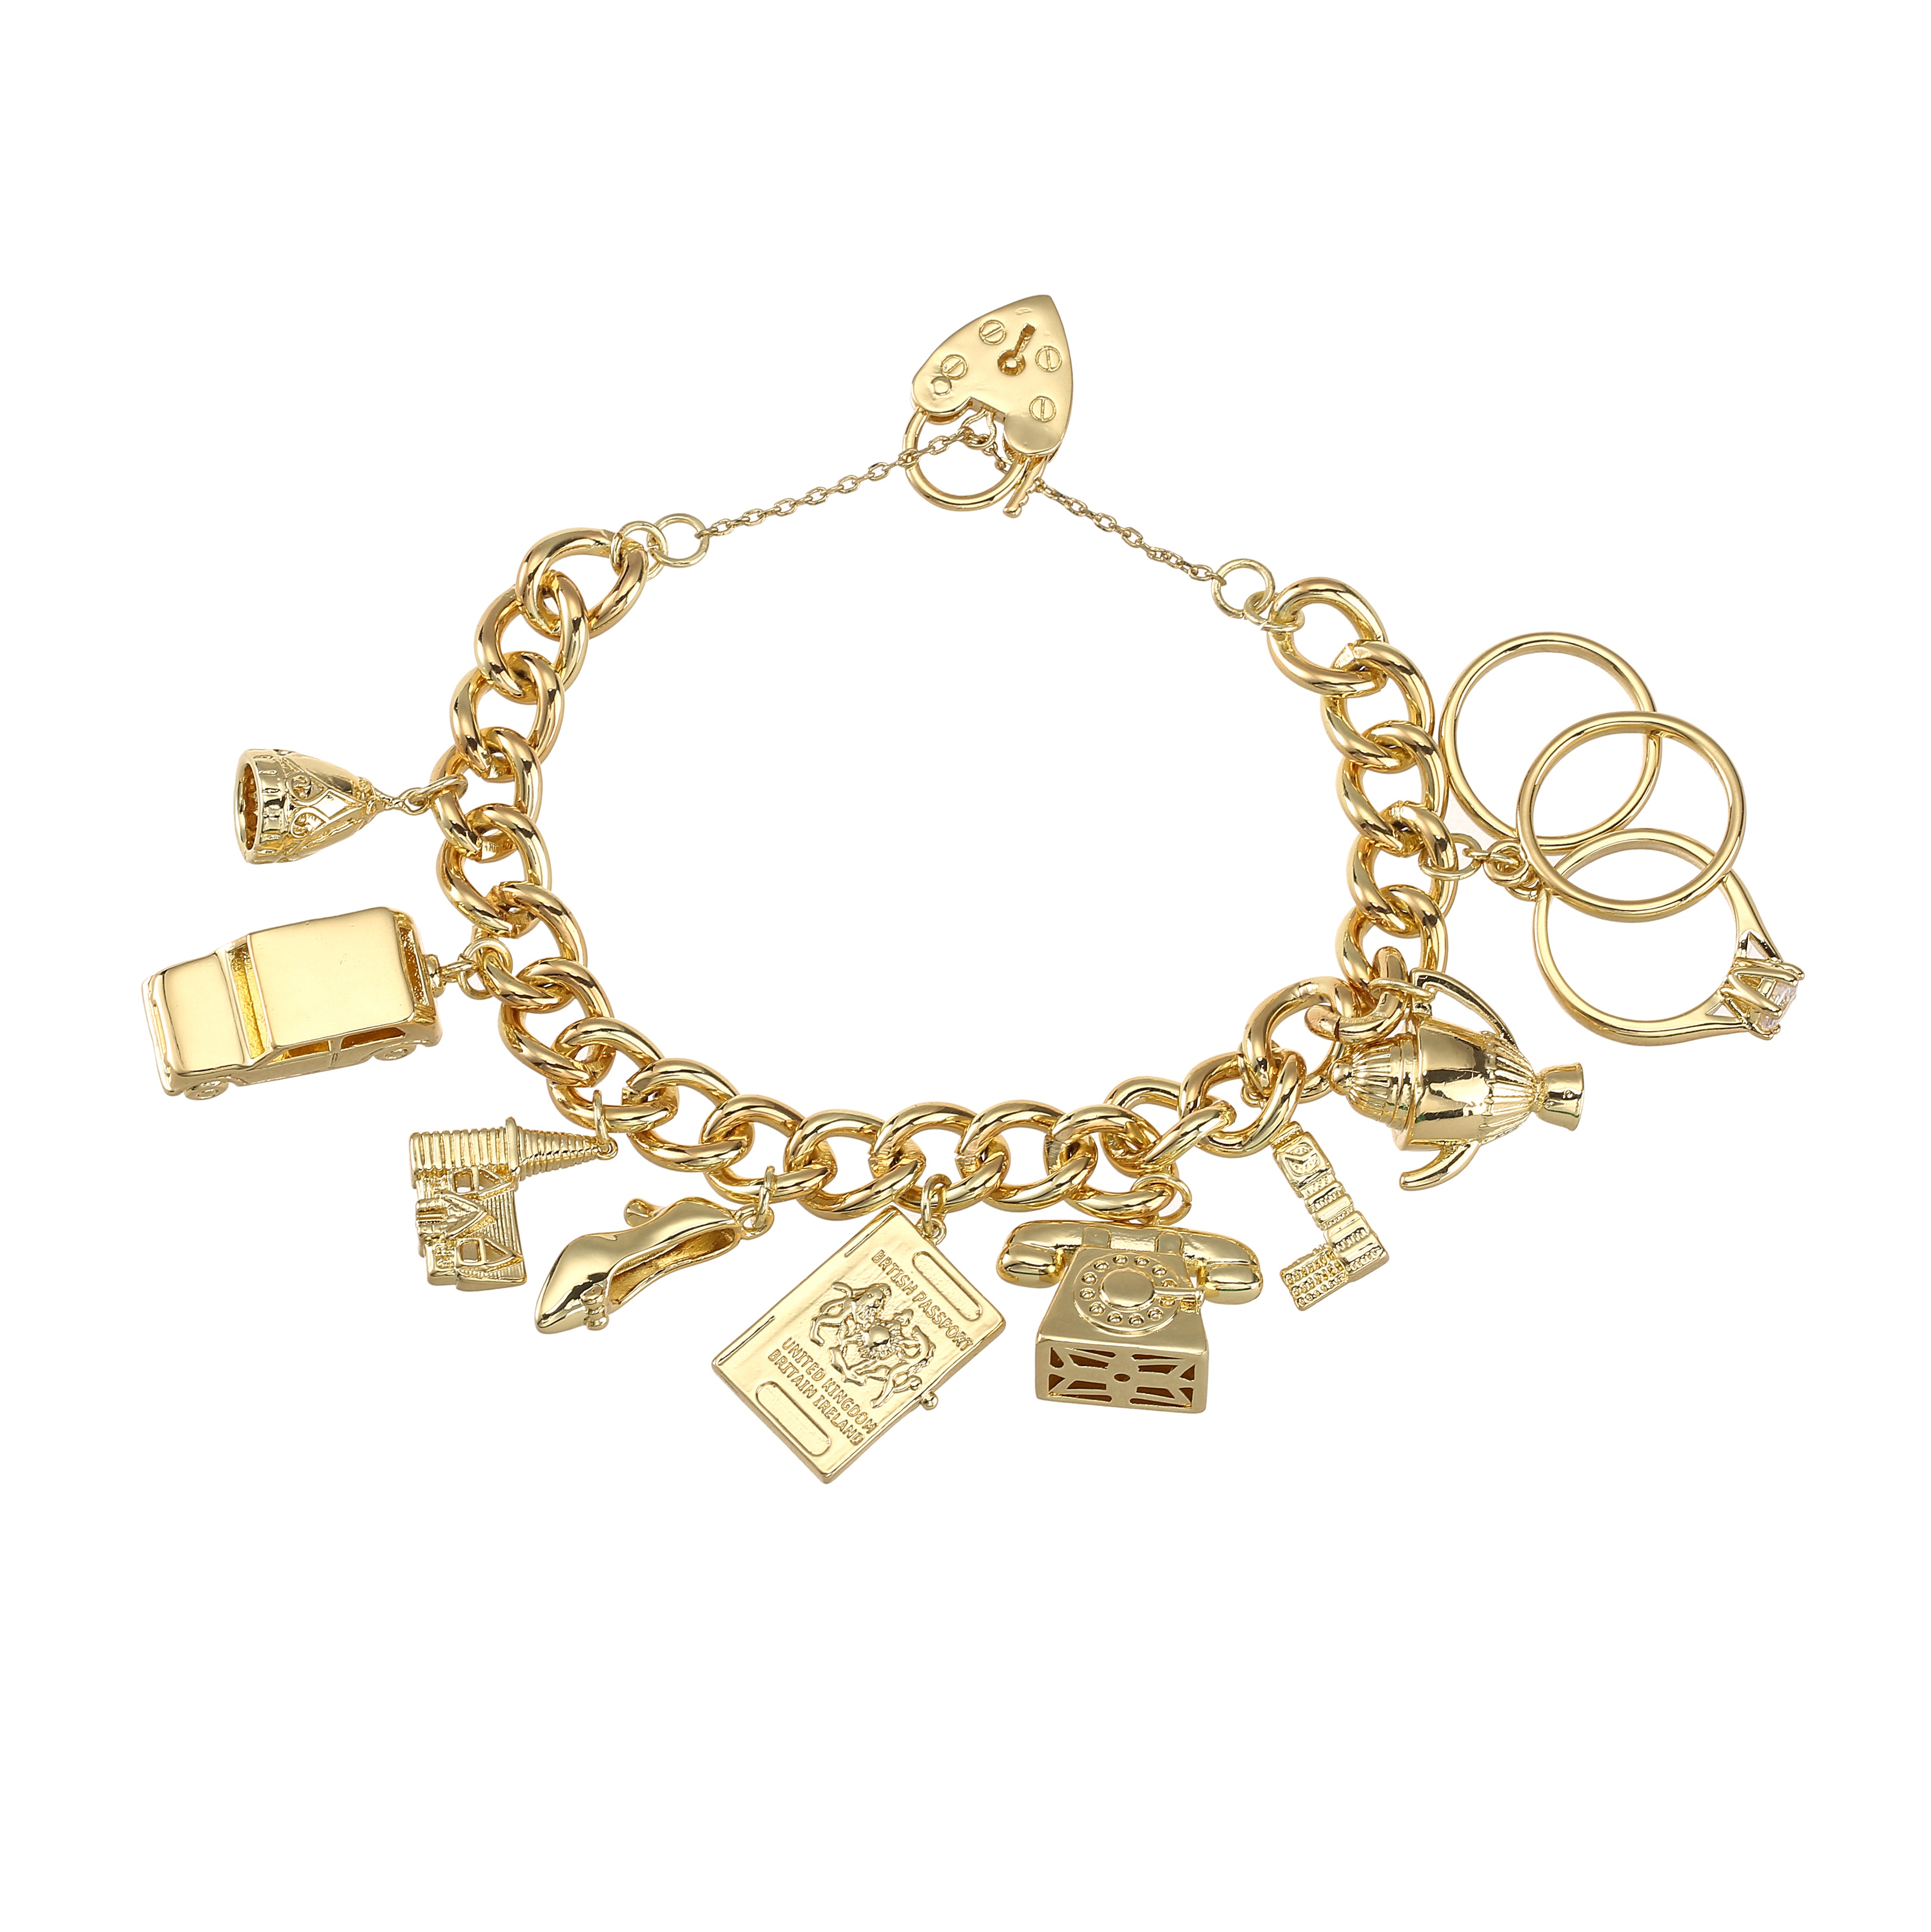 Luxury Gold Charm Bracelet Great Britain Heart Padlock – Bling King